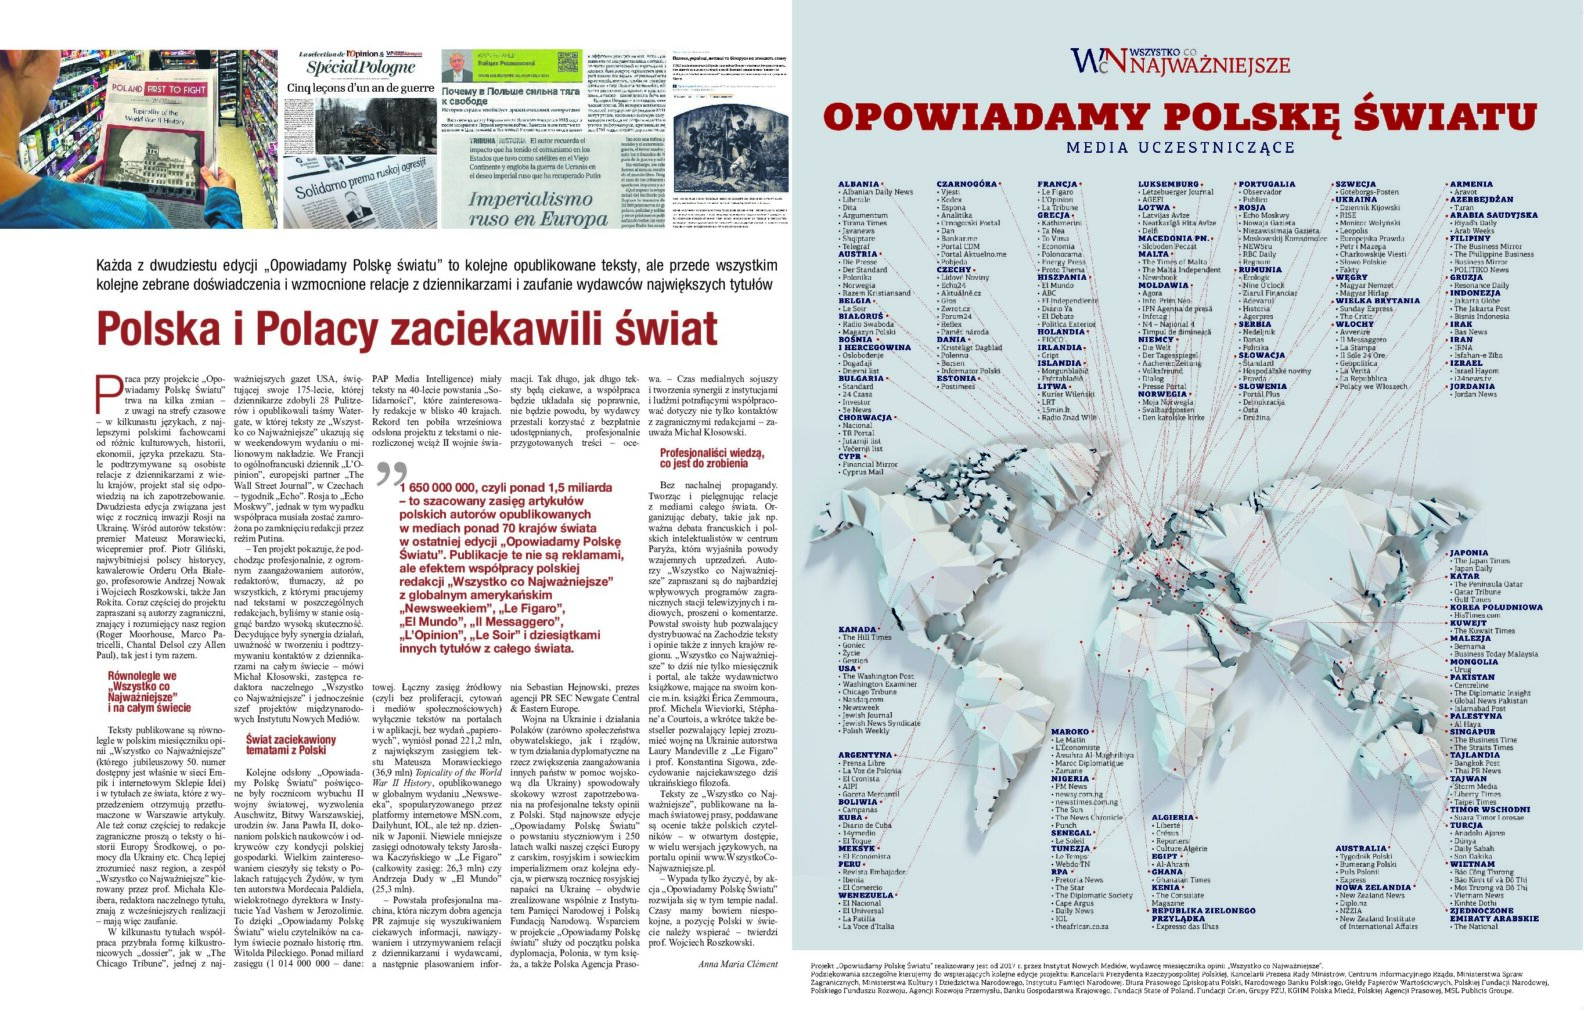 O tym, jak Polacy i Polska zaciekawili świat - w Plus Minus Rzeczpospolitej